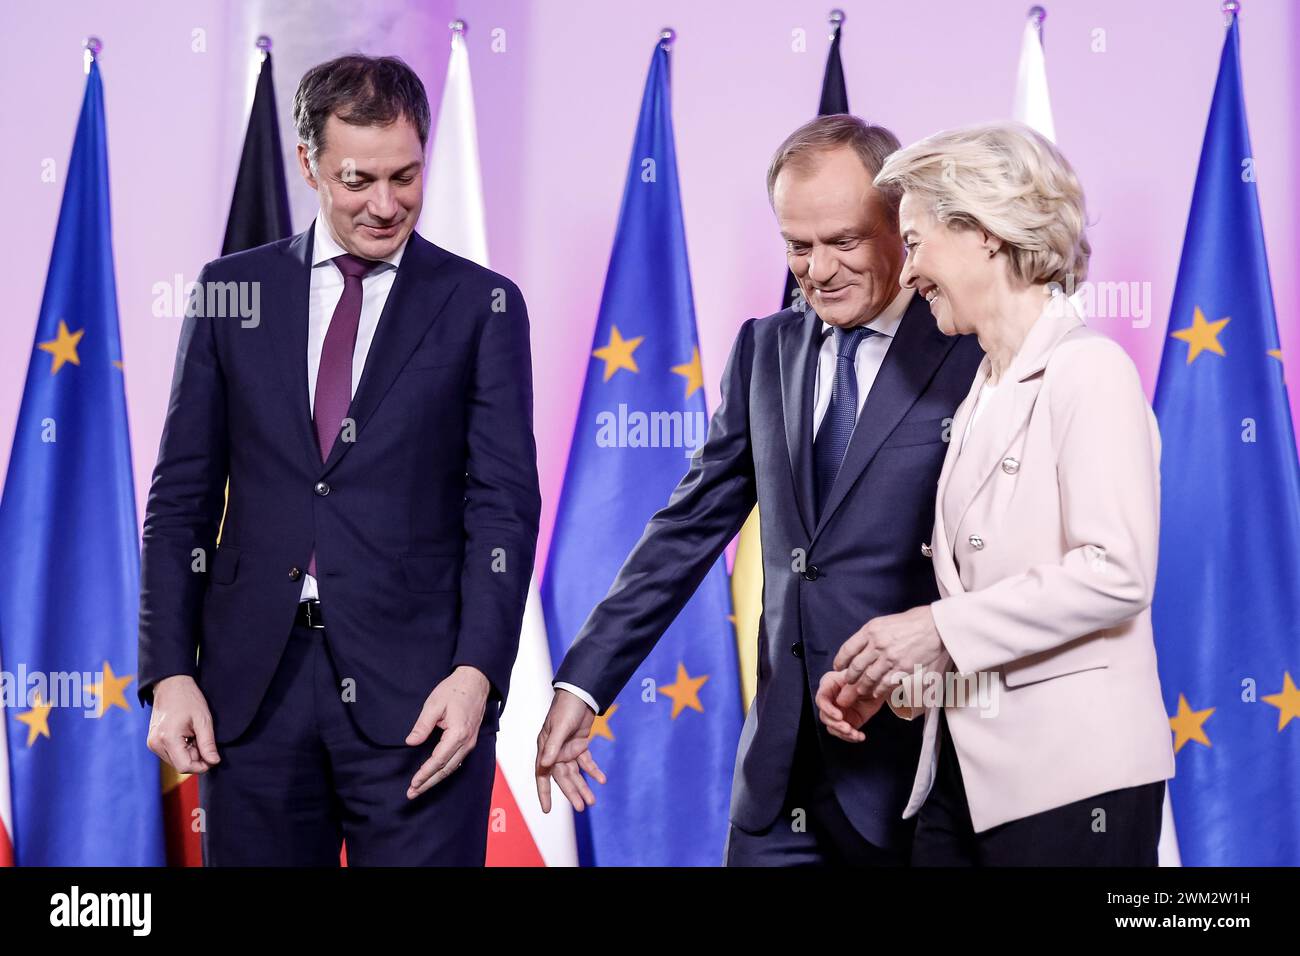 Der polnische Premierminister Donald Tusk begrüßt den belgischen Premierminister Alexander de Croo und die Präsidentin der Europäischen Kommission Ursula von der Leyen zu einem trilateralen Gespräch im polnischen Premierminister in Warschau, der Hauptstadt Polens, am 23. Februar 2024. Stockfoto